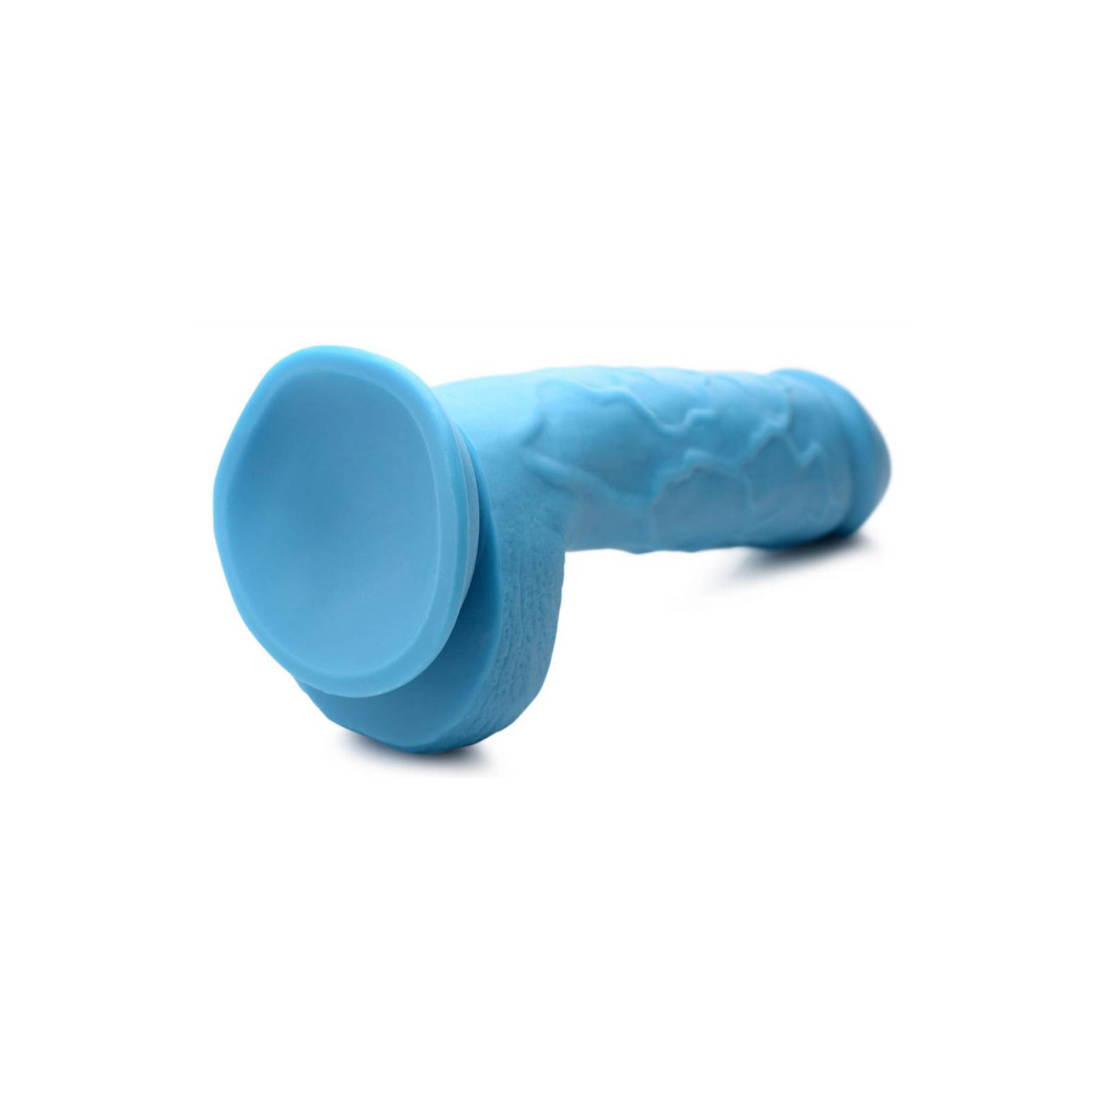 Lichtblauwe dildo van 20.9 cm  van het merk Poppin. Producten van Poppin zijn te koop bij Flavourez.